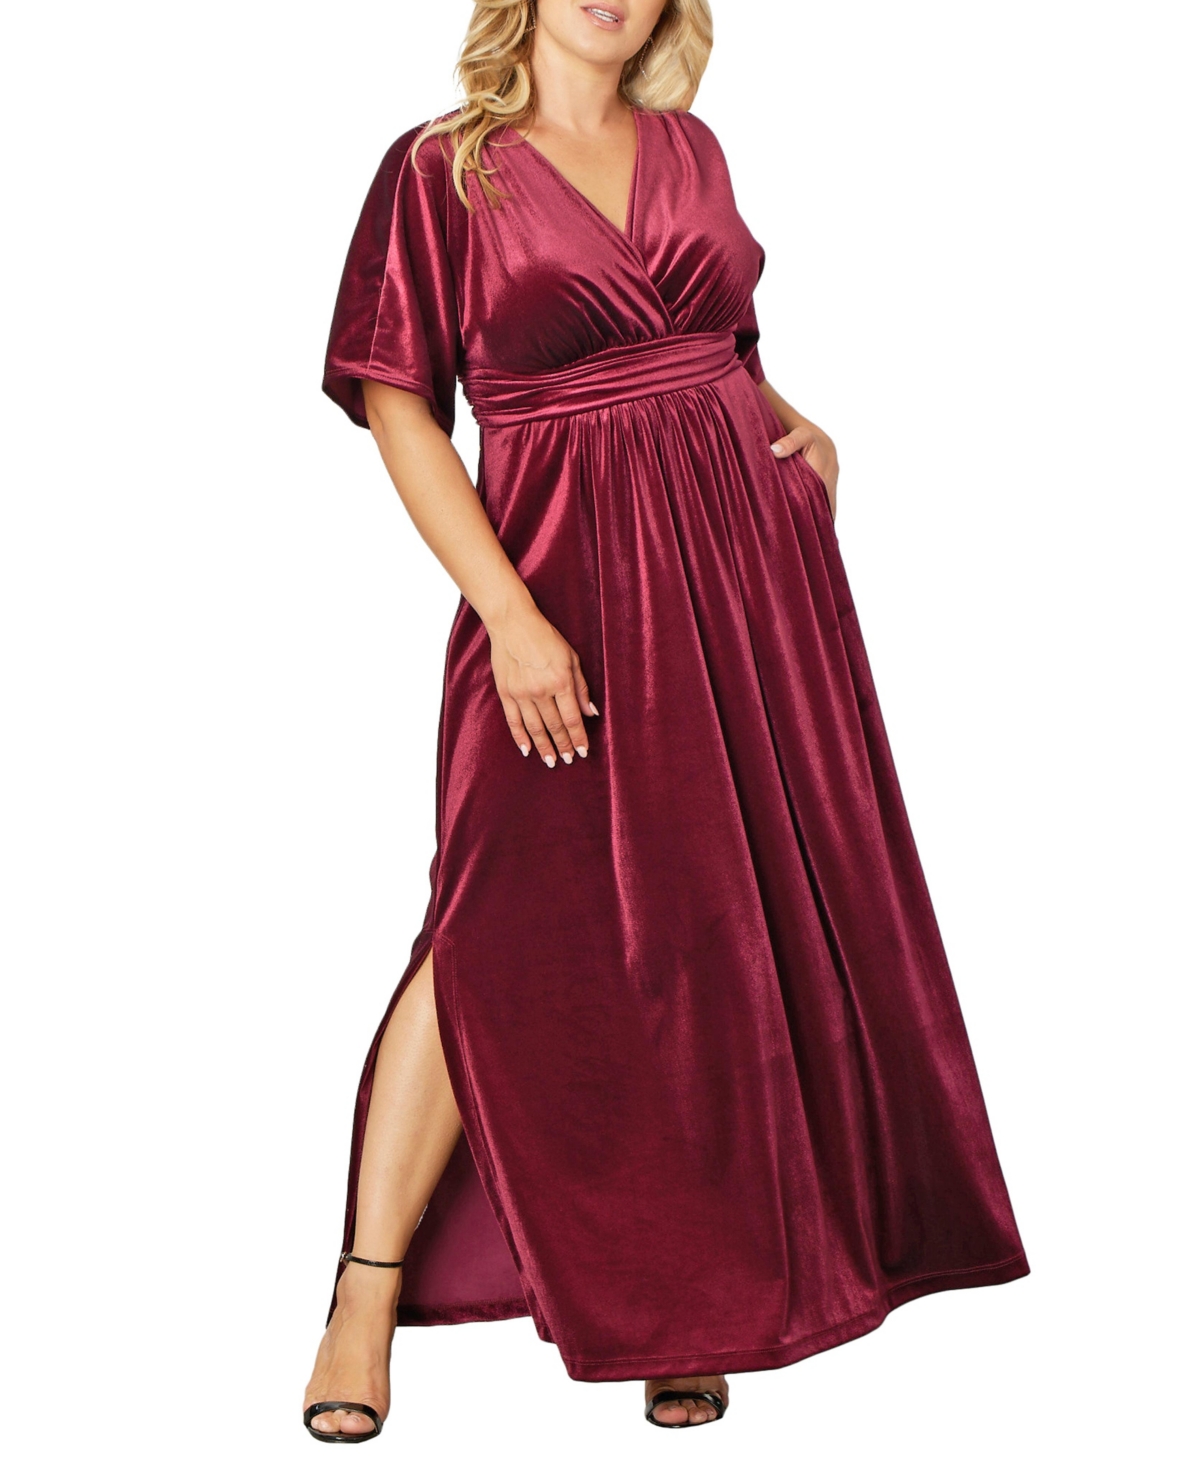 1940s Plus Size Clothing: Dresses History Womens Plus Size Verona Velvet Evening Gown - Pinot noir $188.00 AT vintagedancer.com